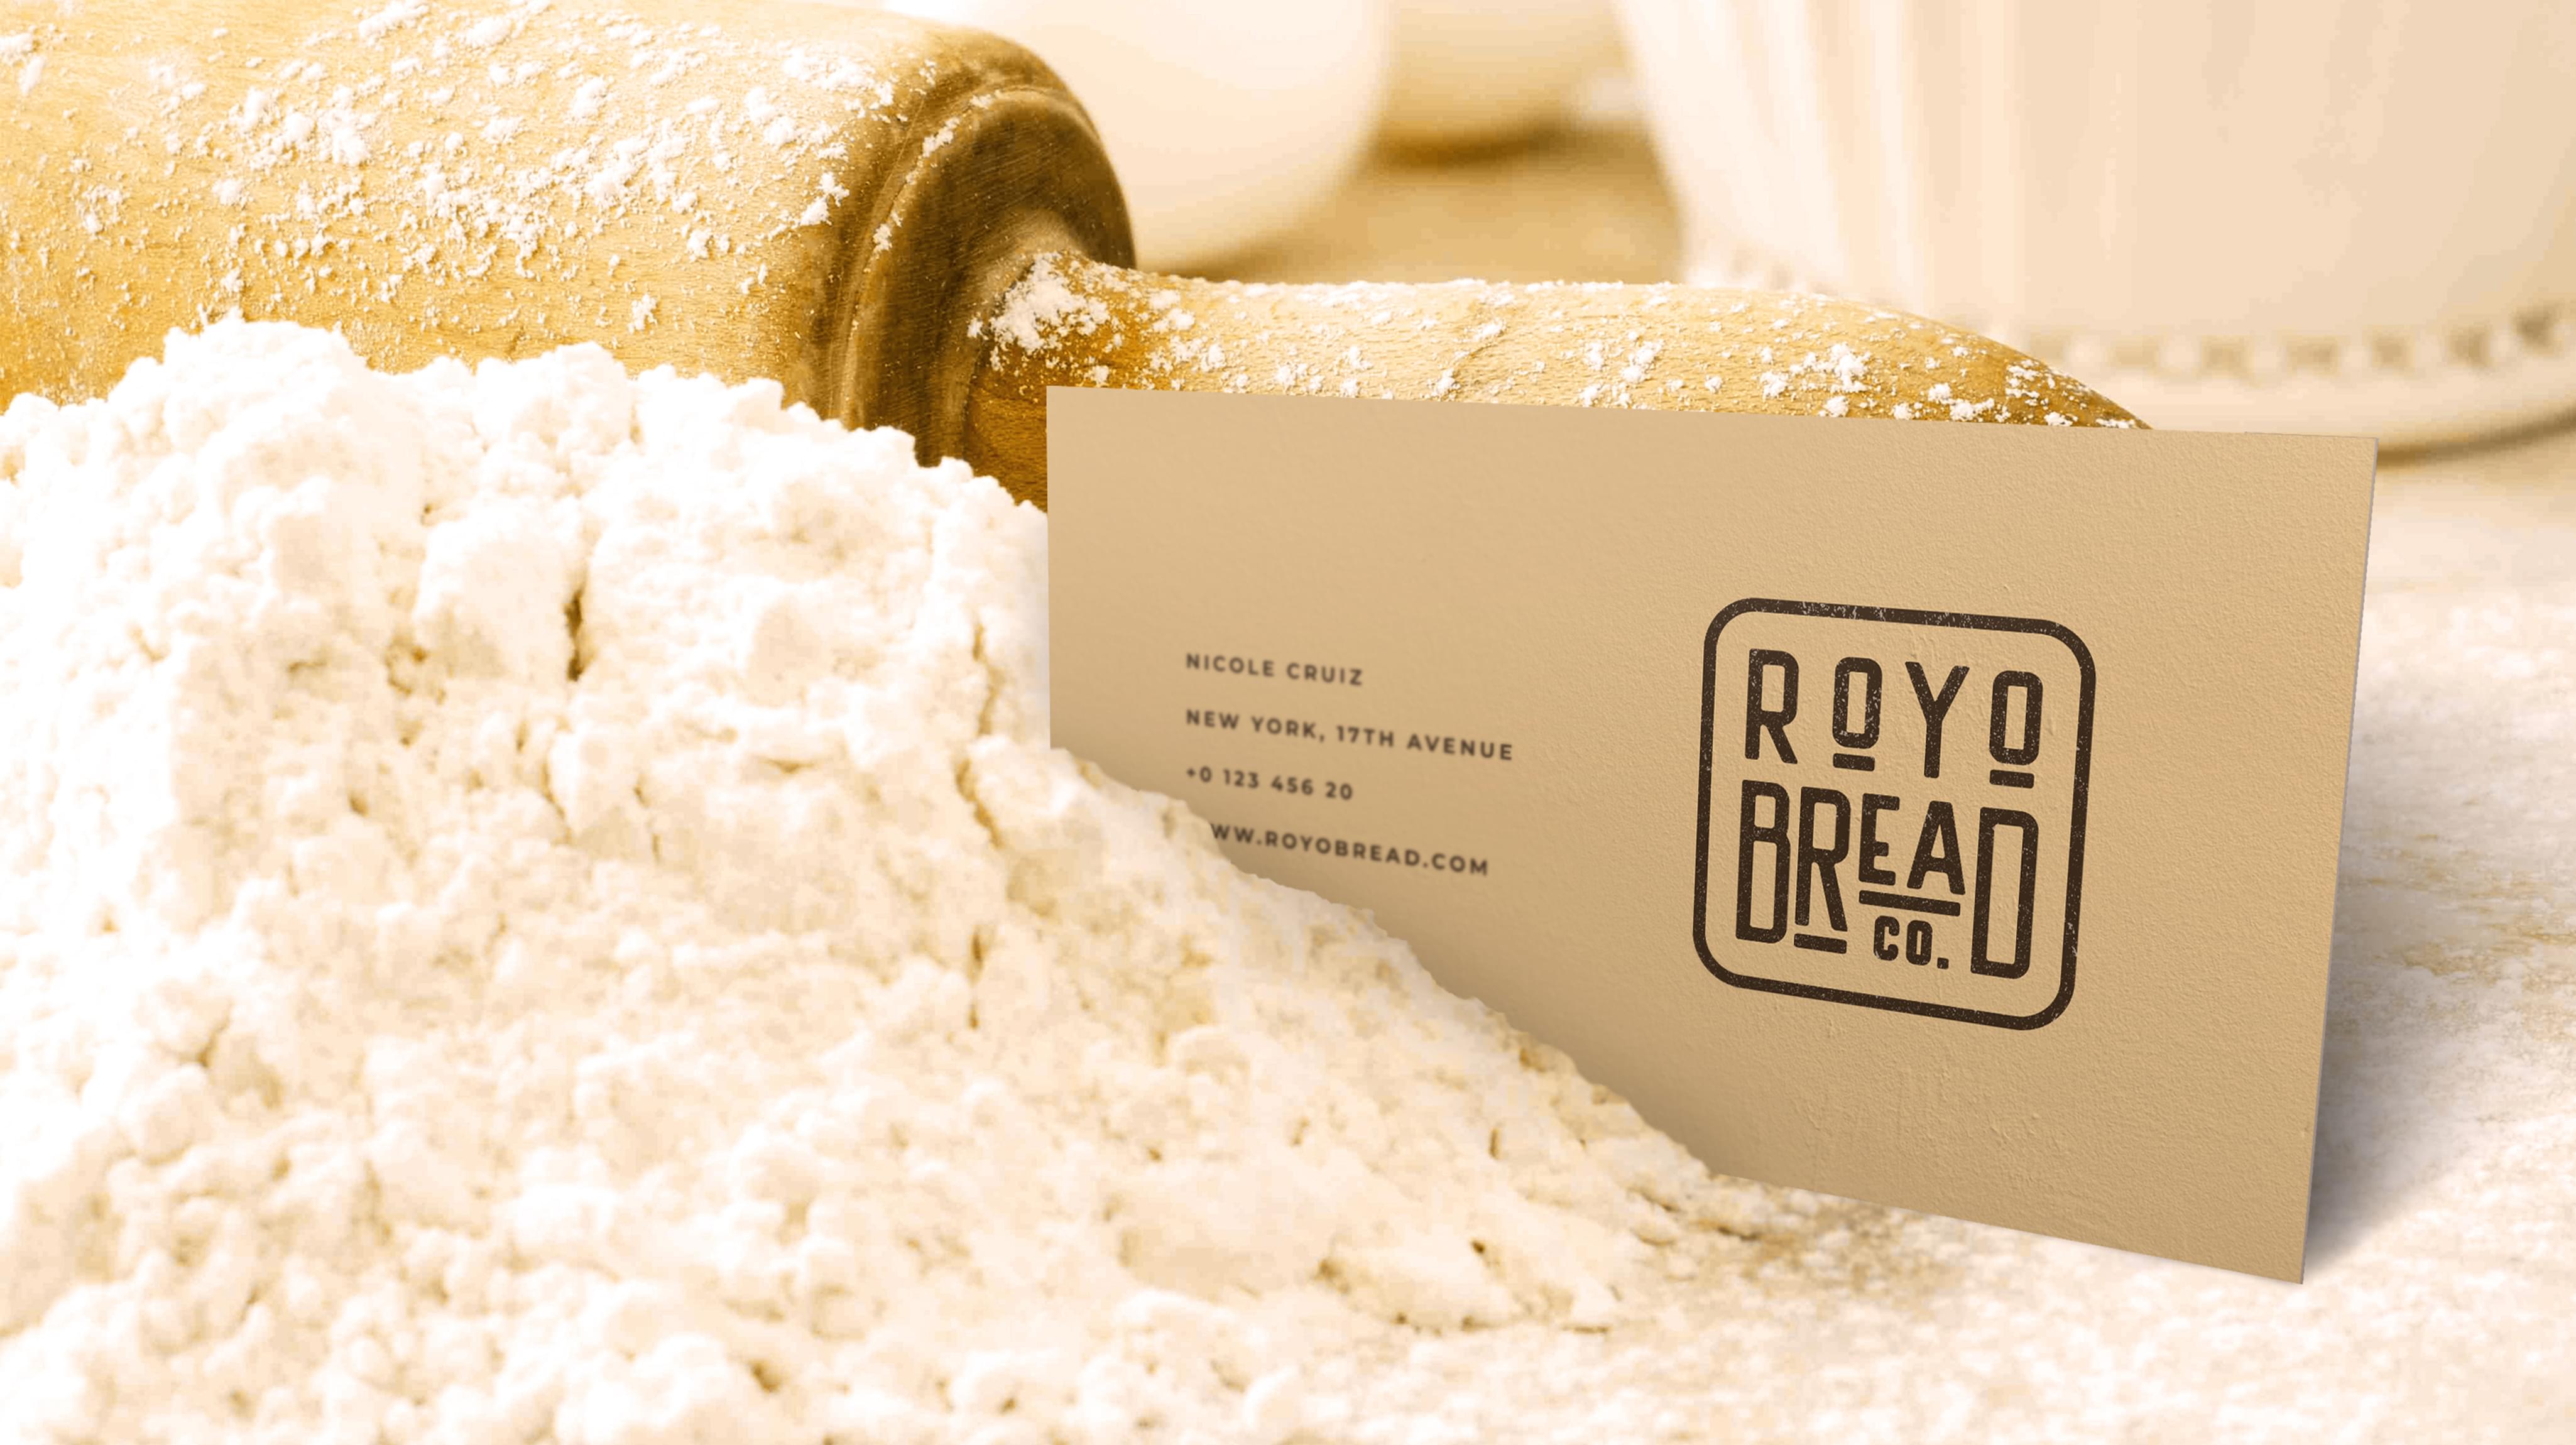 RoYo Bread | Order #1 Custom Branding 2021 | Branding Agency Branding